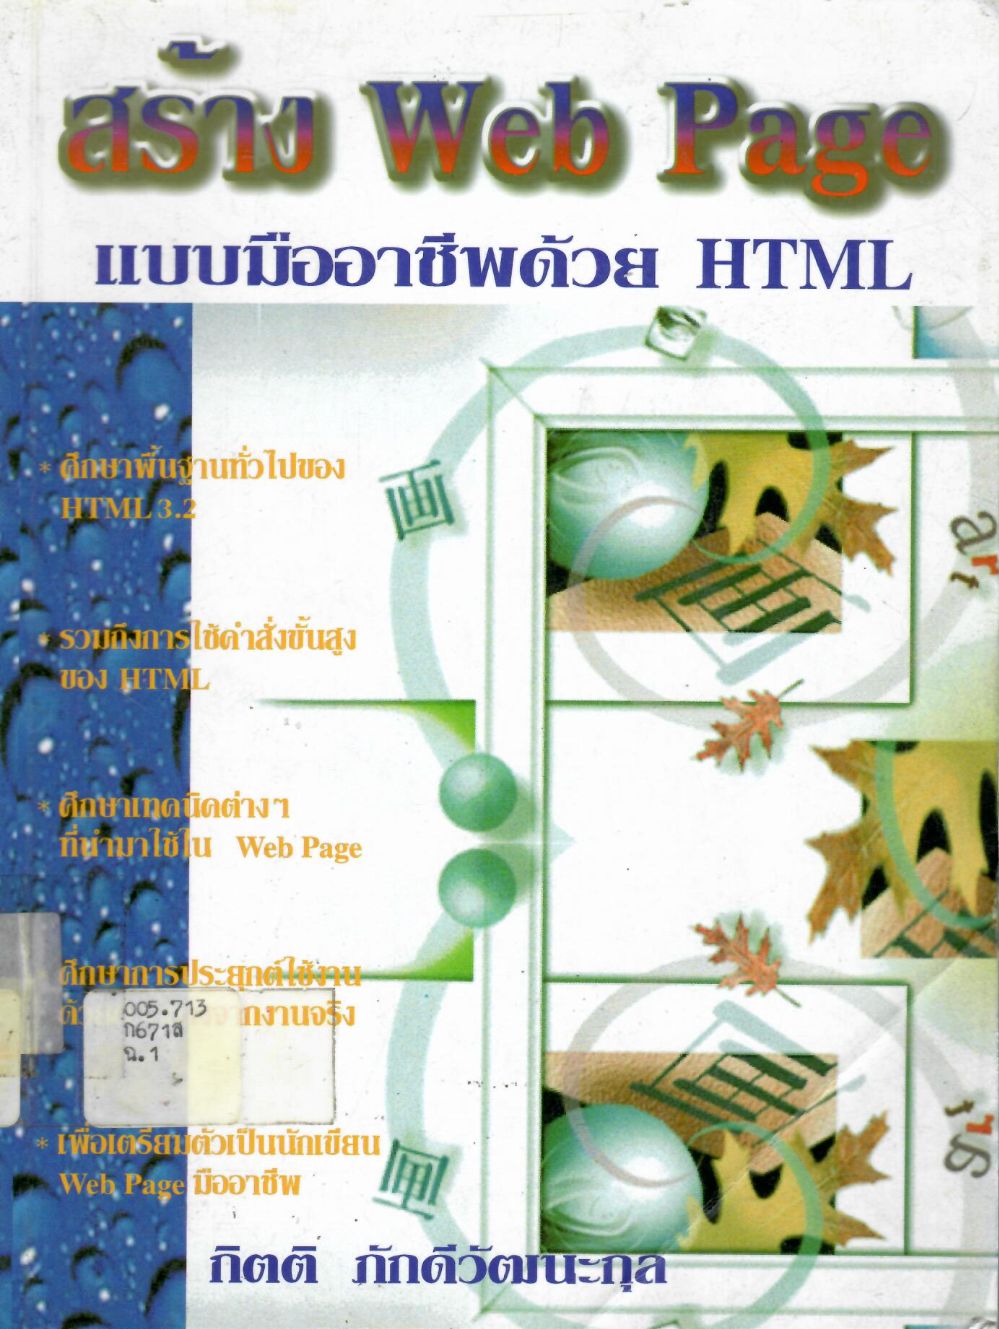 สร้าง Web Page แบบมืออาชีพด้วย HTML/ กิตติ ภักดีวัฒนะกุล